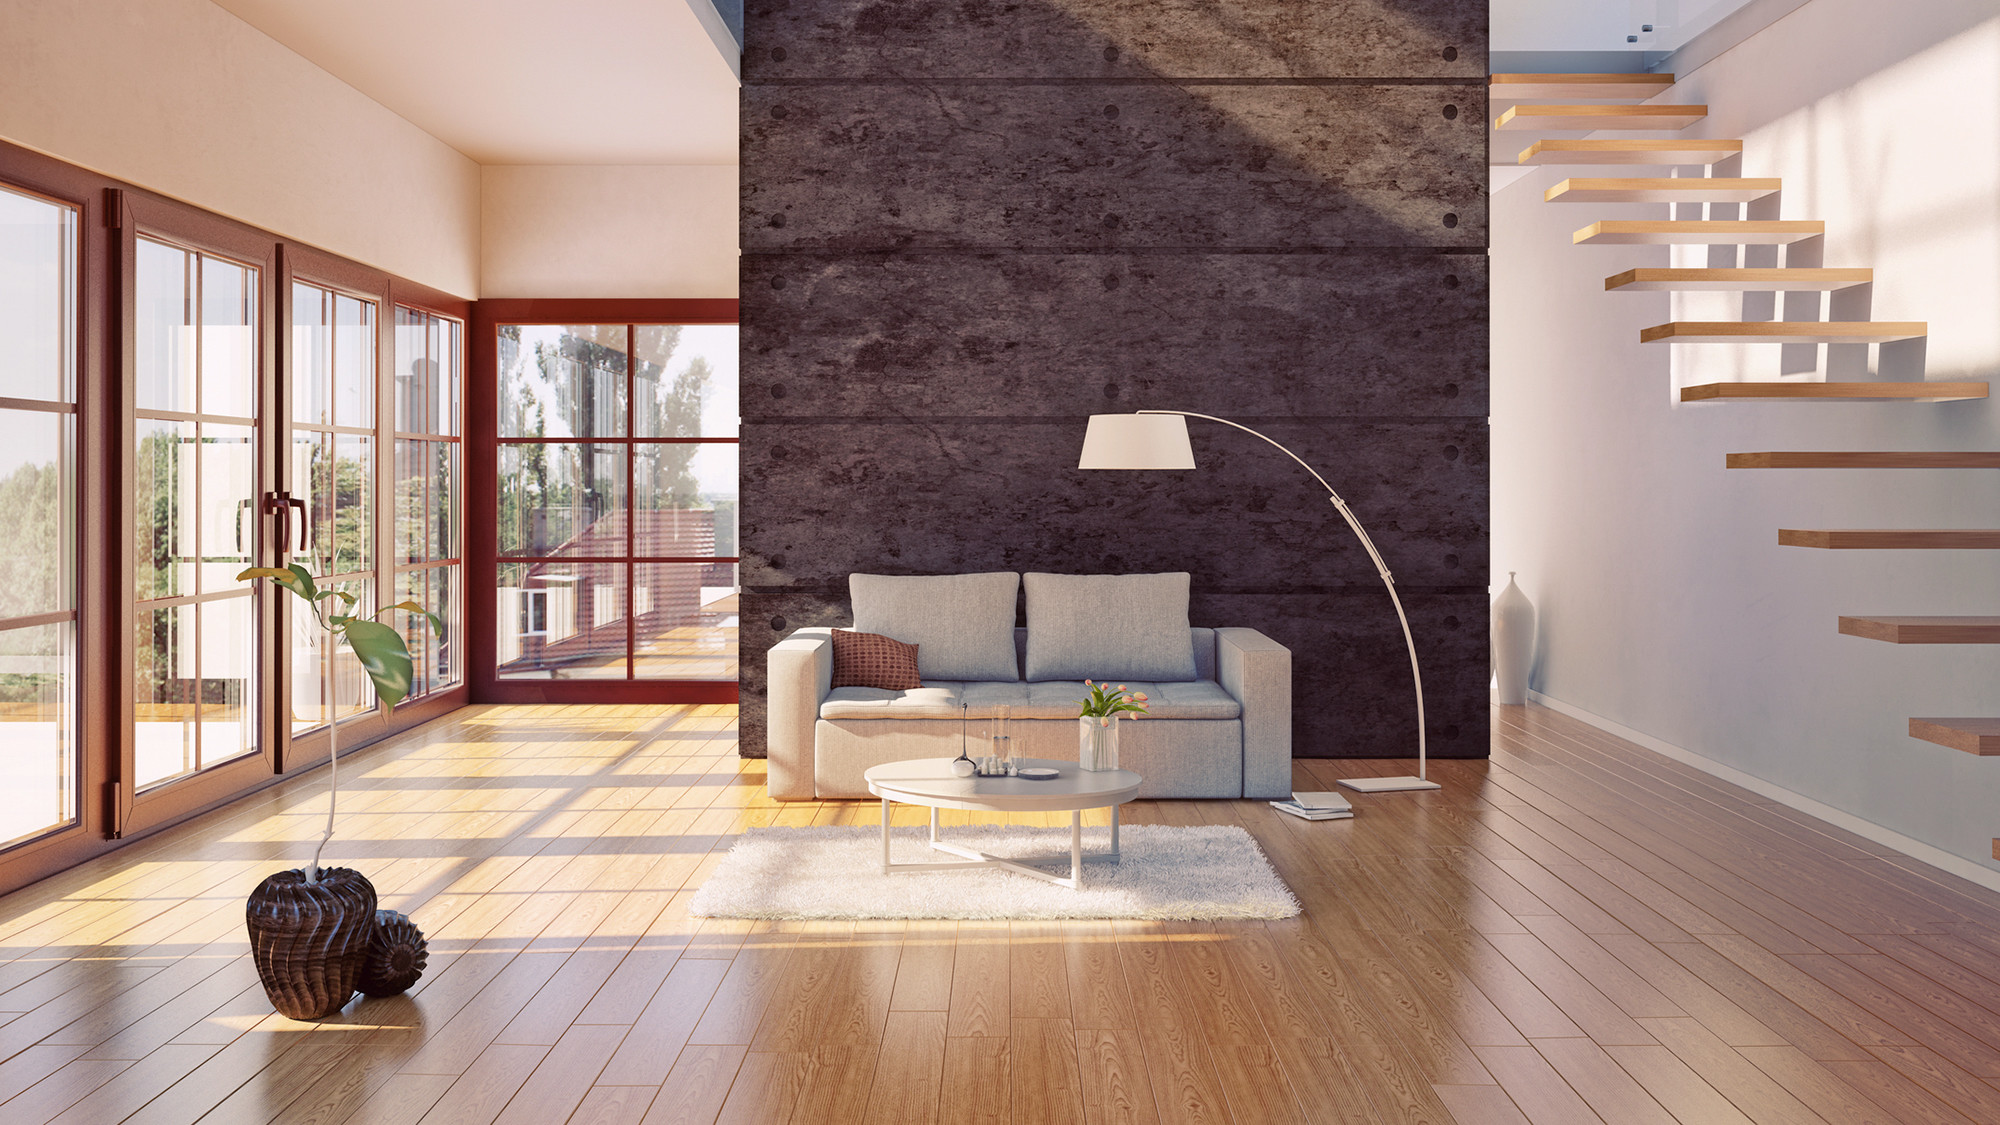 how to refinish hardwood floors by hand of do hardwood floors provide the best return on investment realtor coma for hardwood floors investment